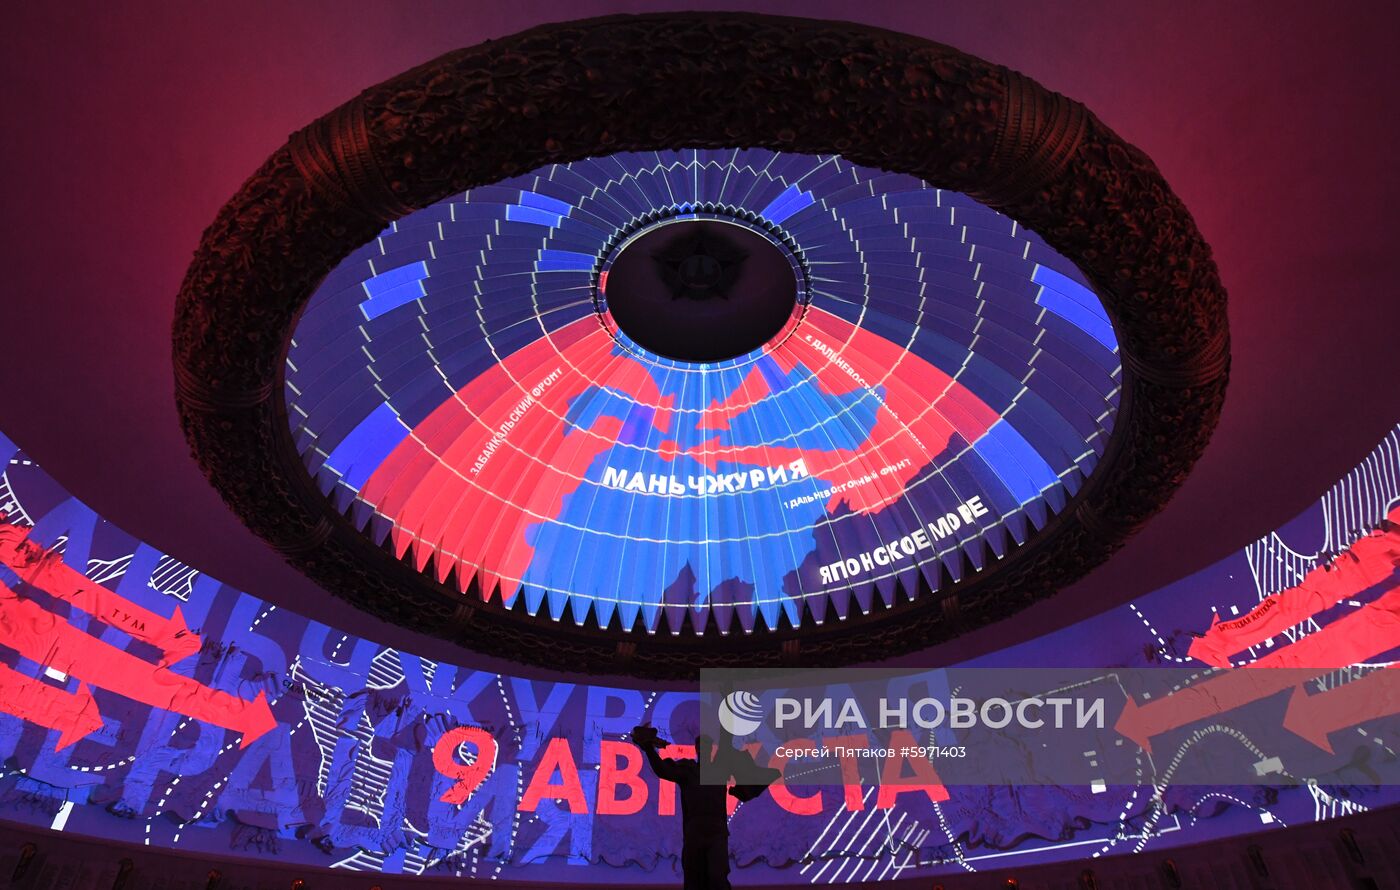 Презентация инсталляции "Дальневосточный финал" в Музее Победы